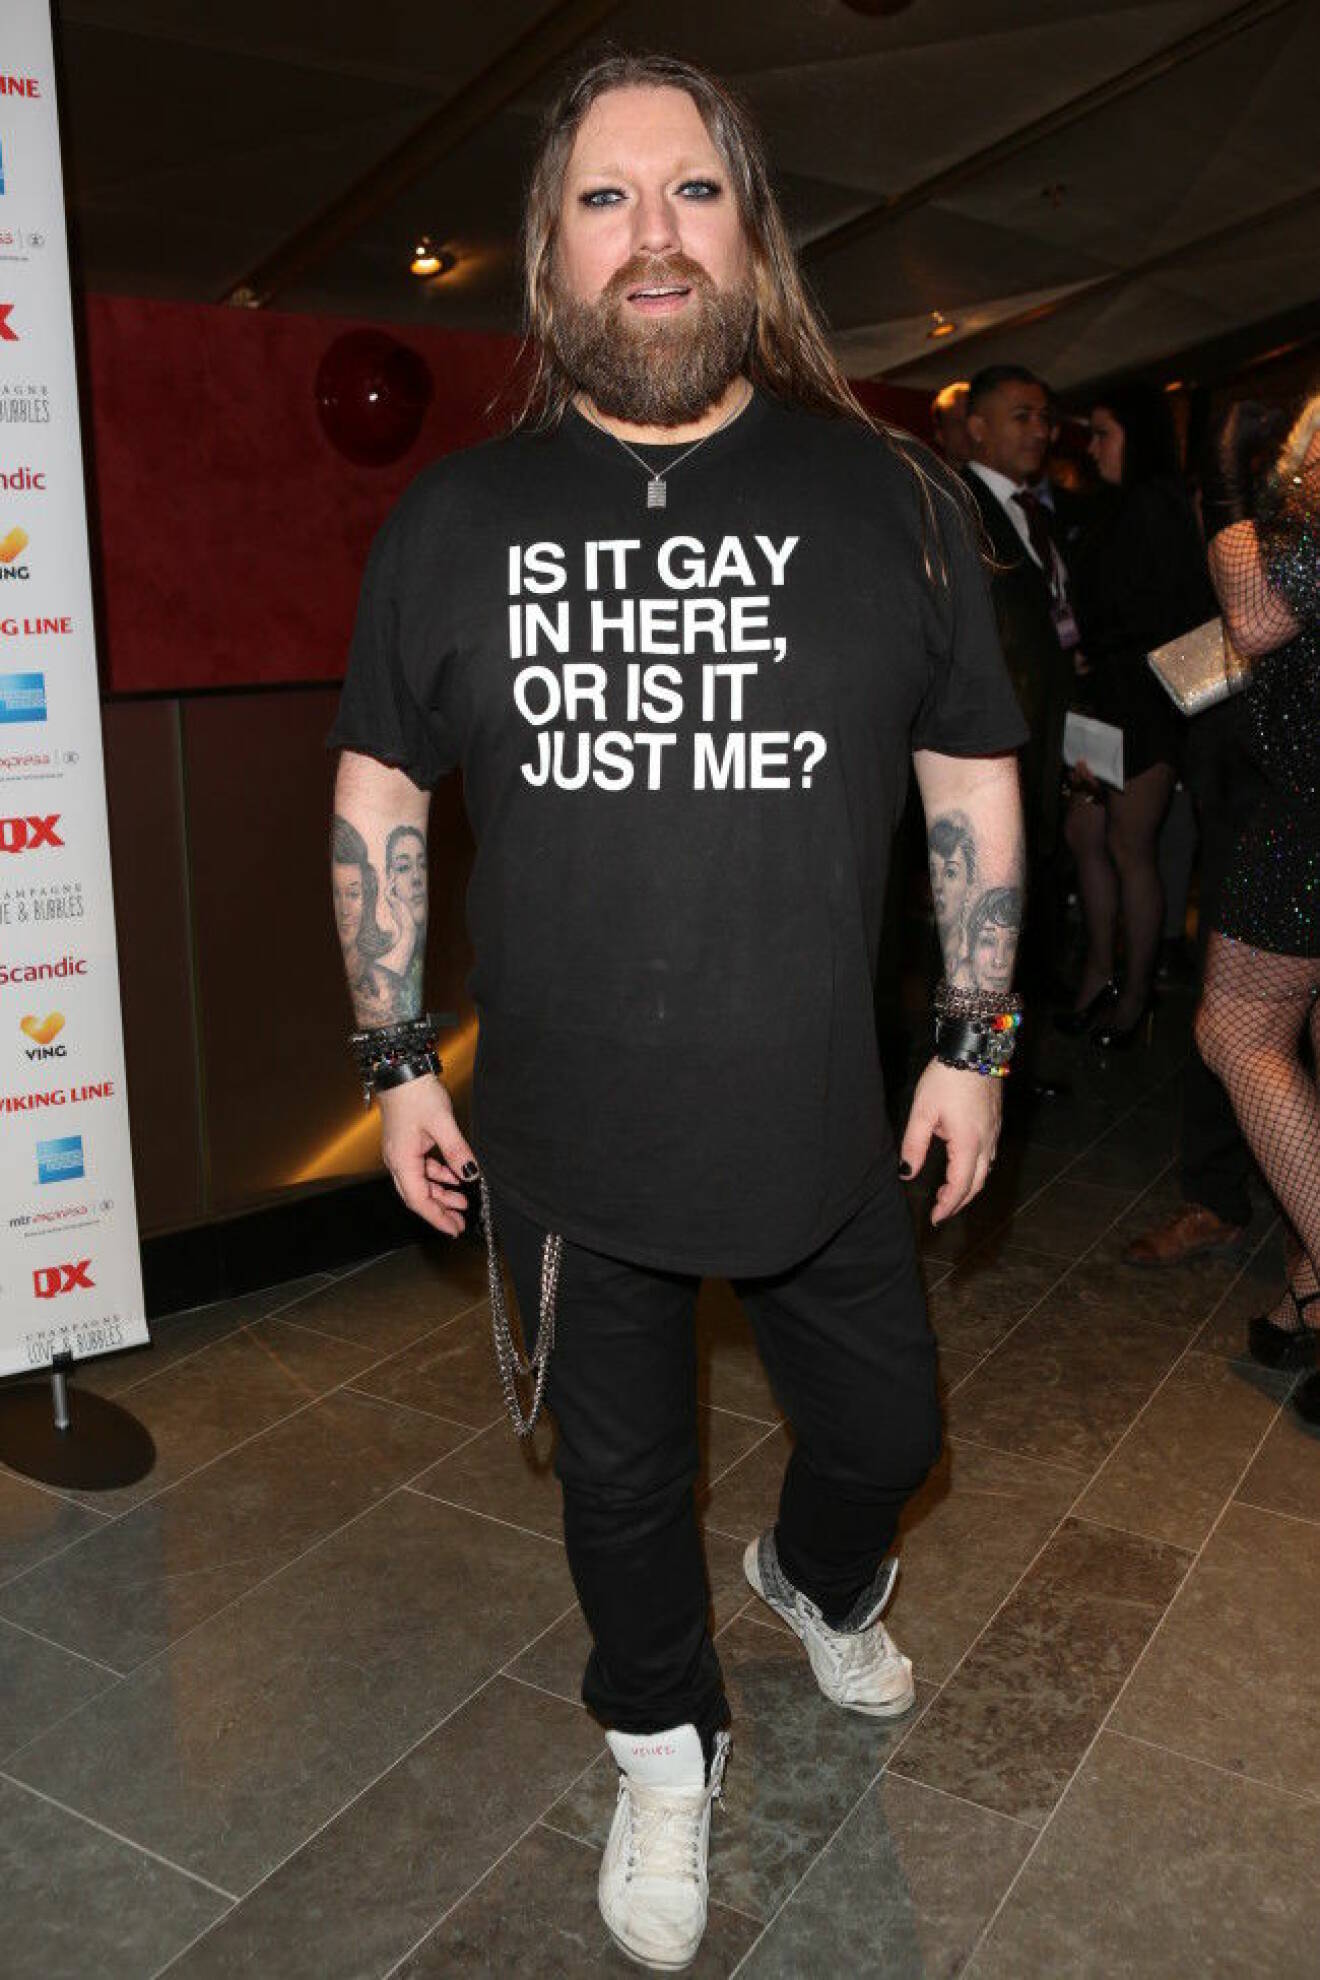 Richard-Söderberg-Årets-Homo-qx gala-gay